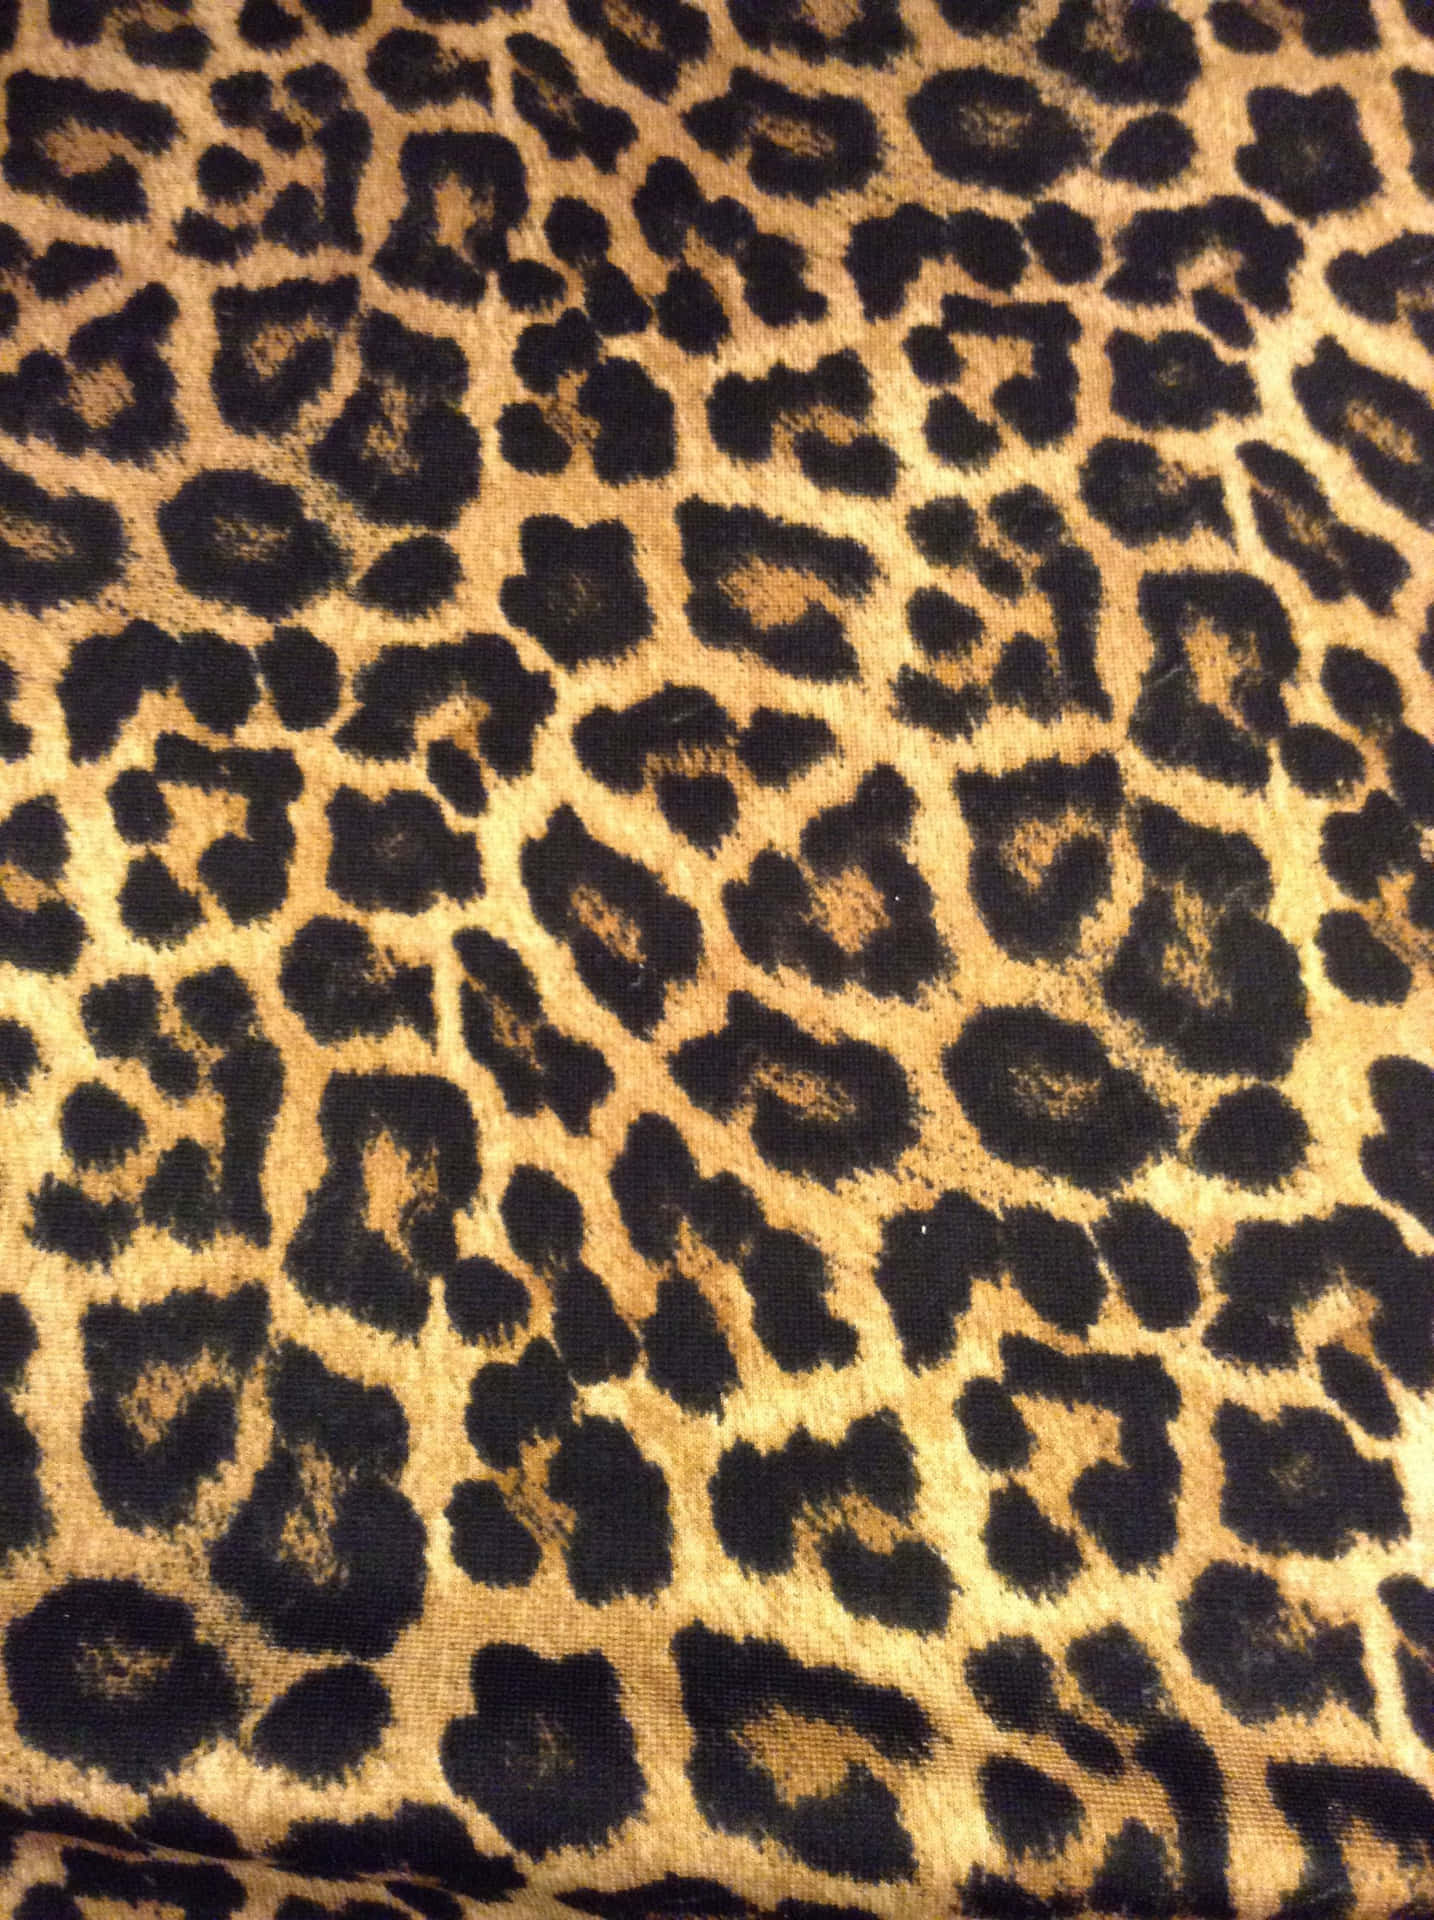 An intriguing leopard pattern wallpaper. Wallpaper